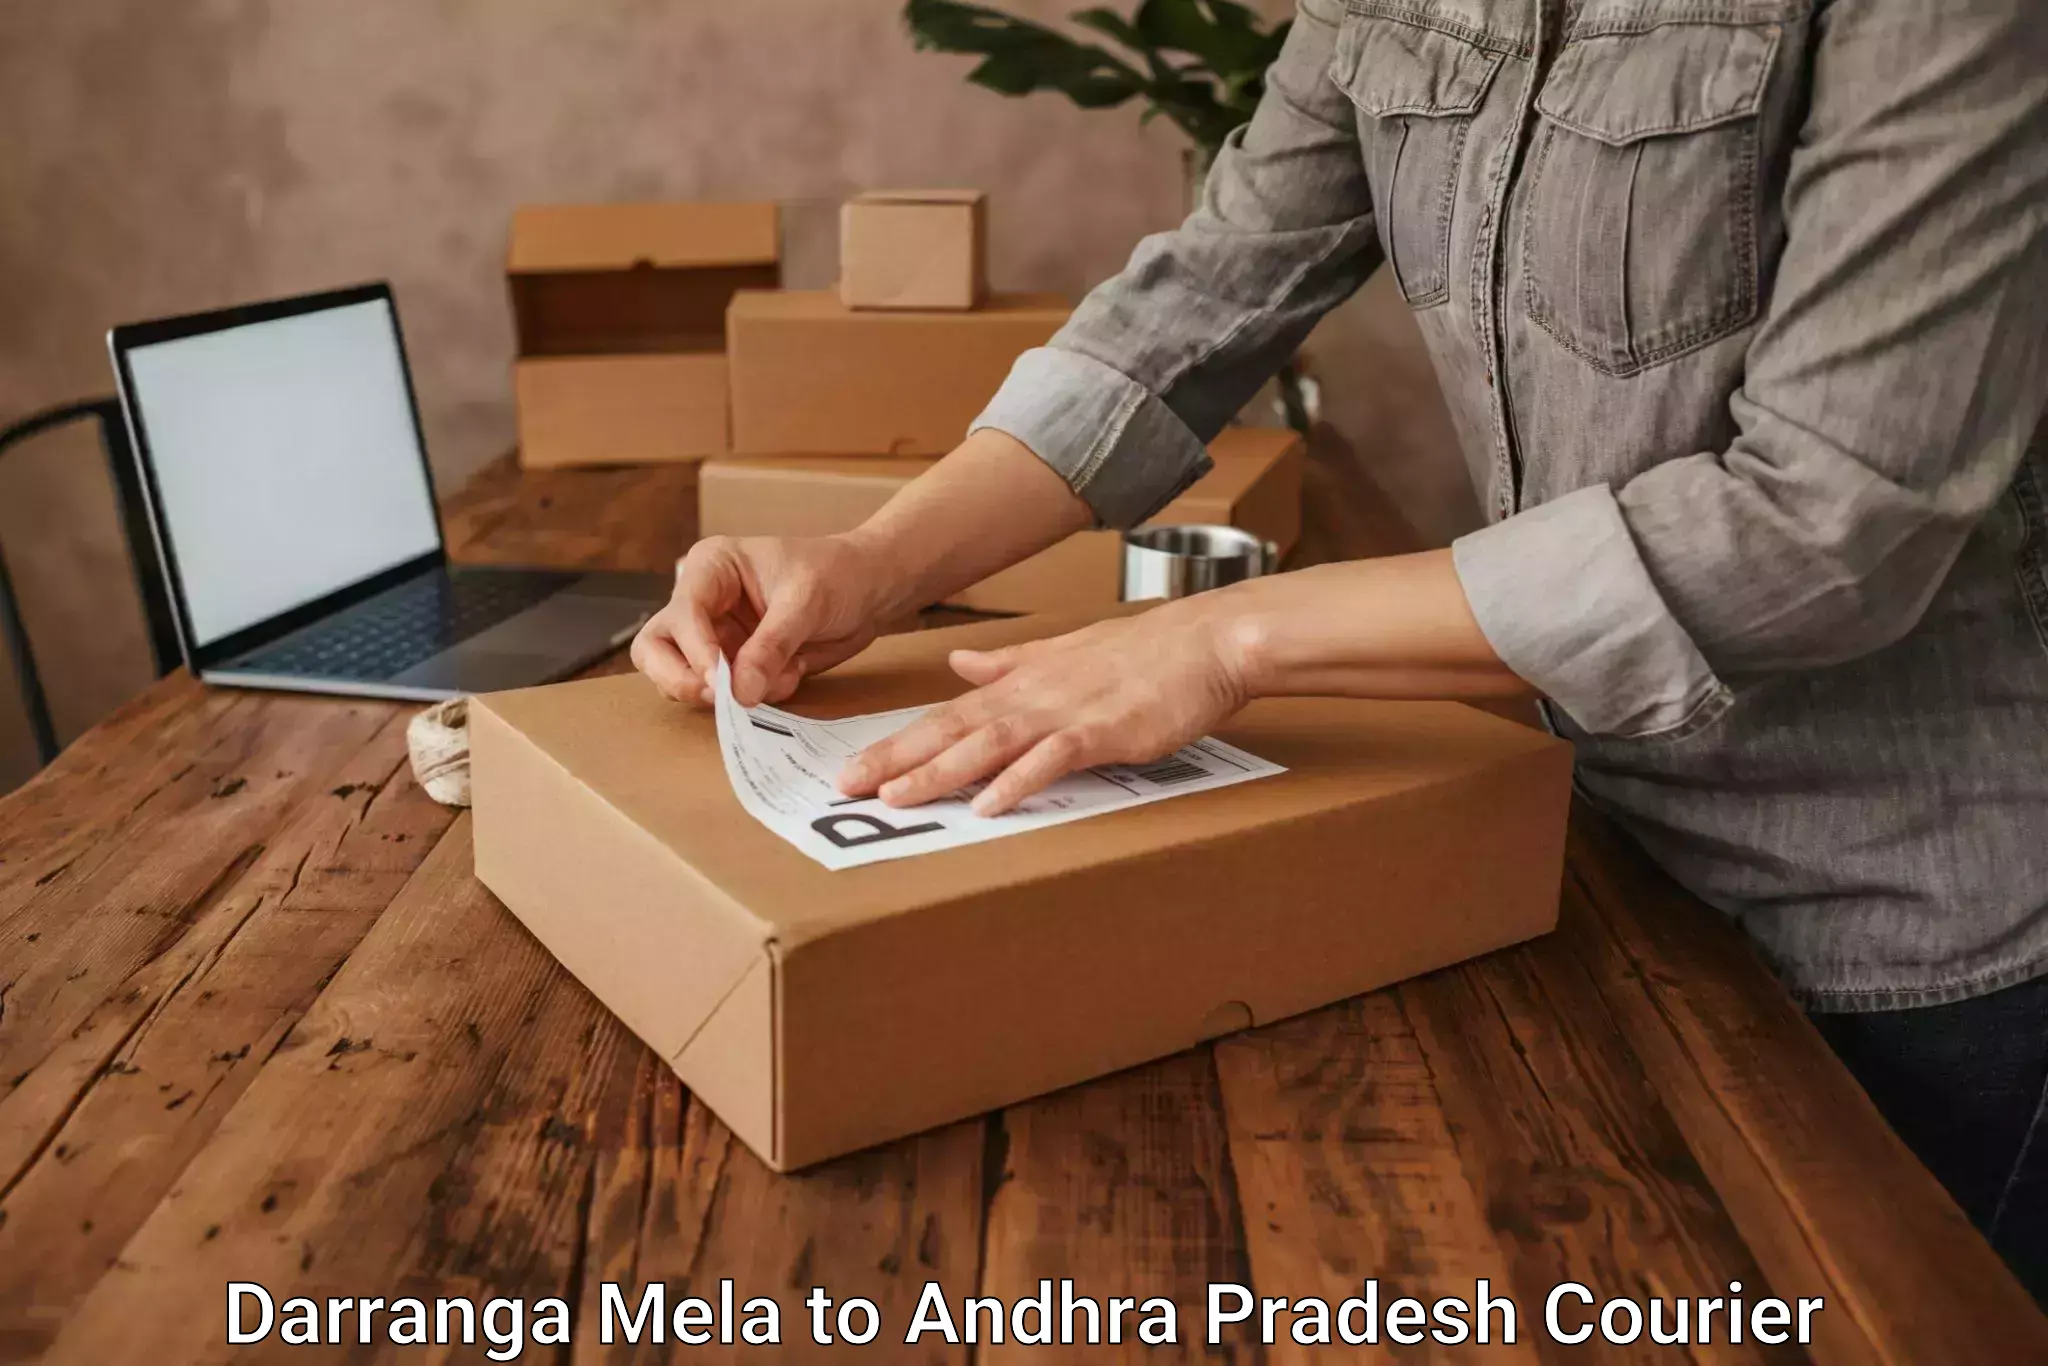 Smart logistics solutions Darranga Mela to Andhra Pradesh